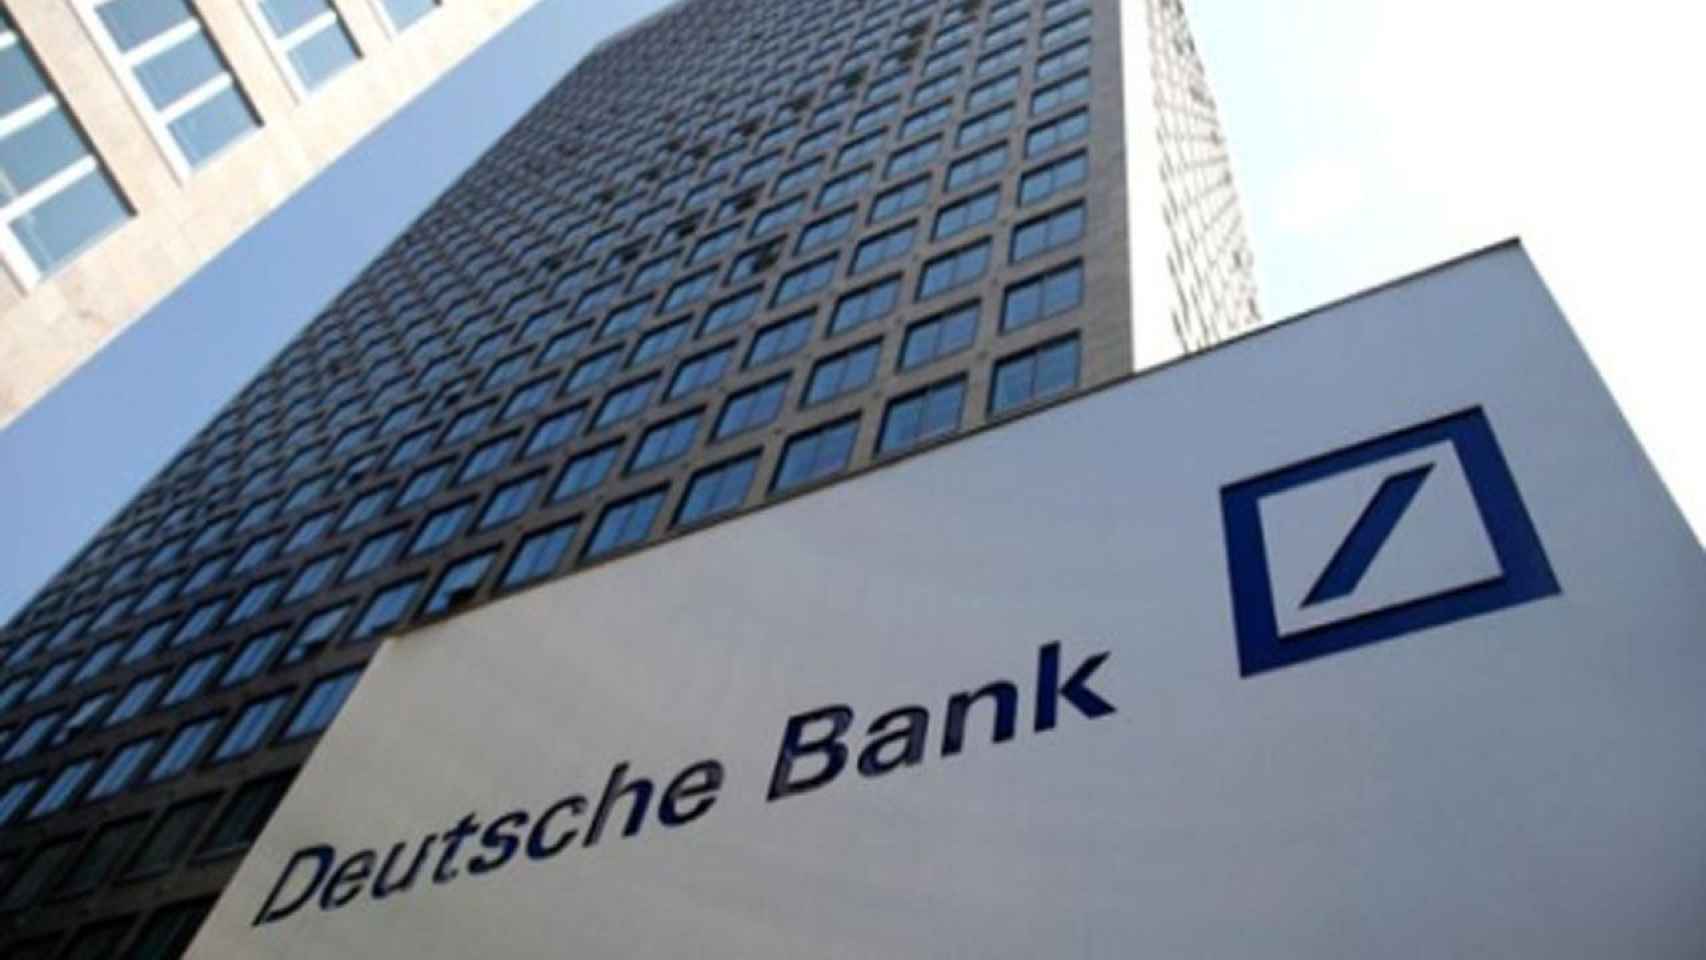 Una foto de archivo de un edificio de Deutsche Bank, banco de Alemania / Deutsche Bank